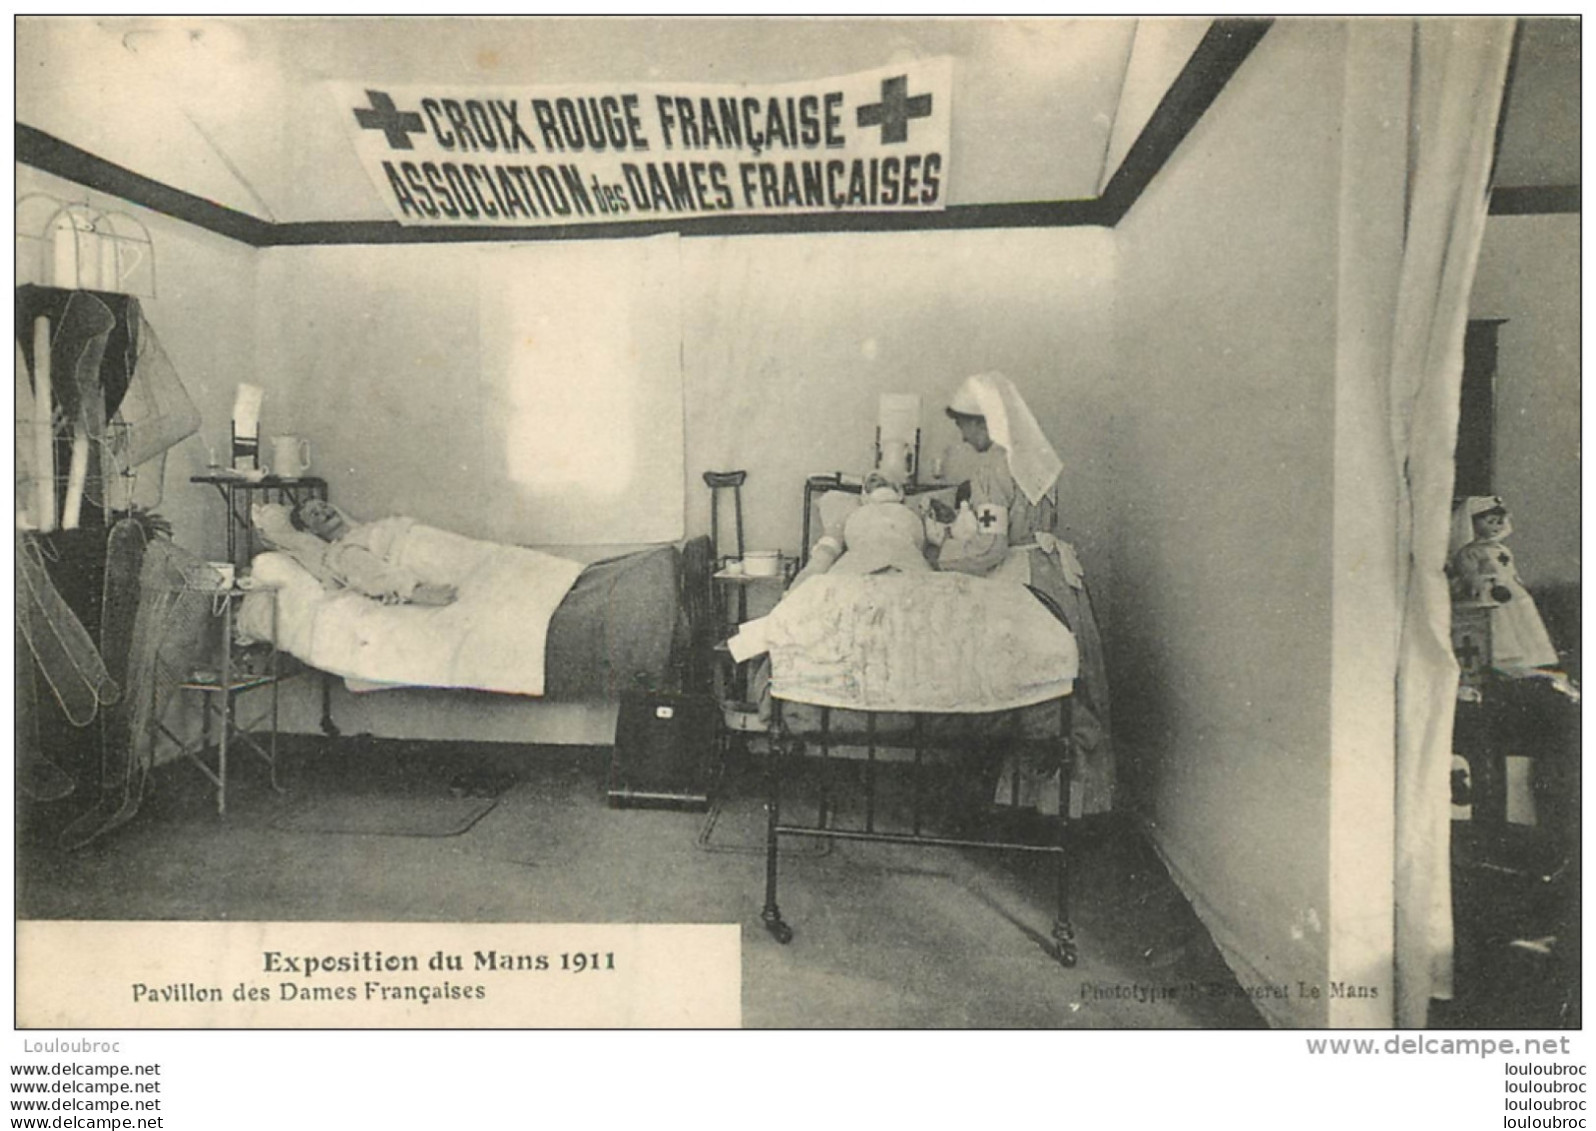 CROIX ROUGE FRANCAISE ASSOCIATION DES DAMES FRANCAISES EXPOSITION DU MANS 1911 PAVILLON DES DAMES FRANCAISES - Santé